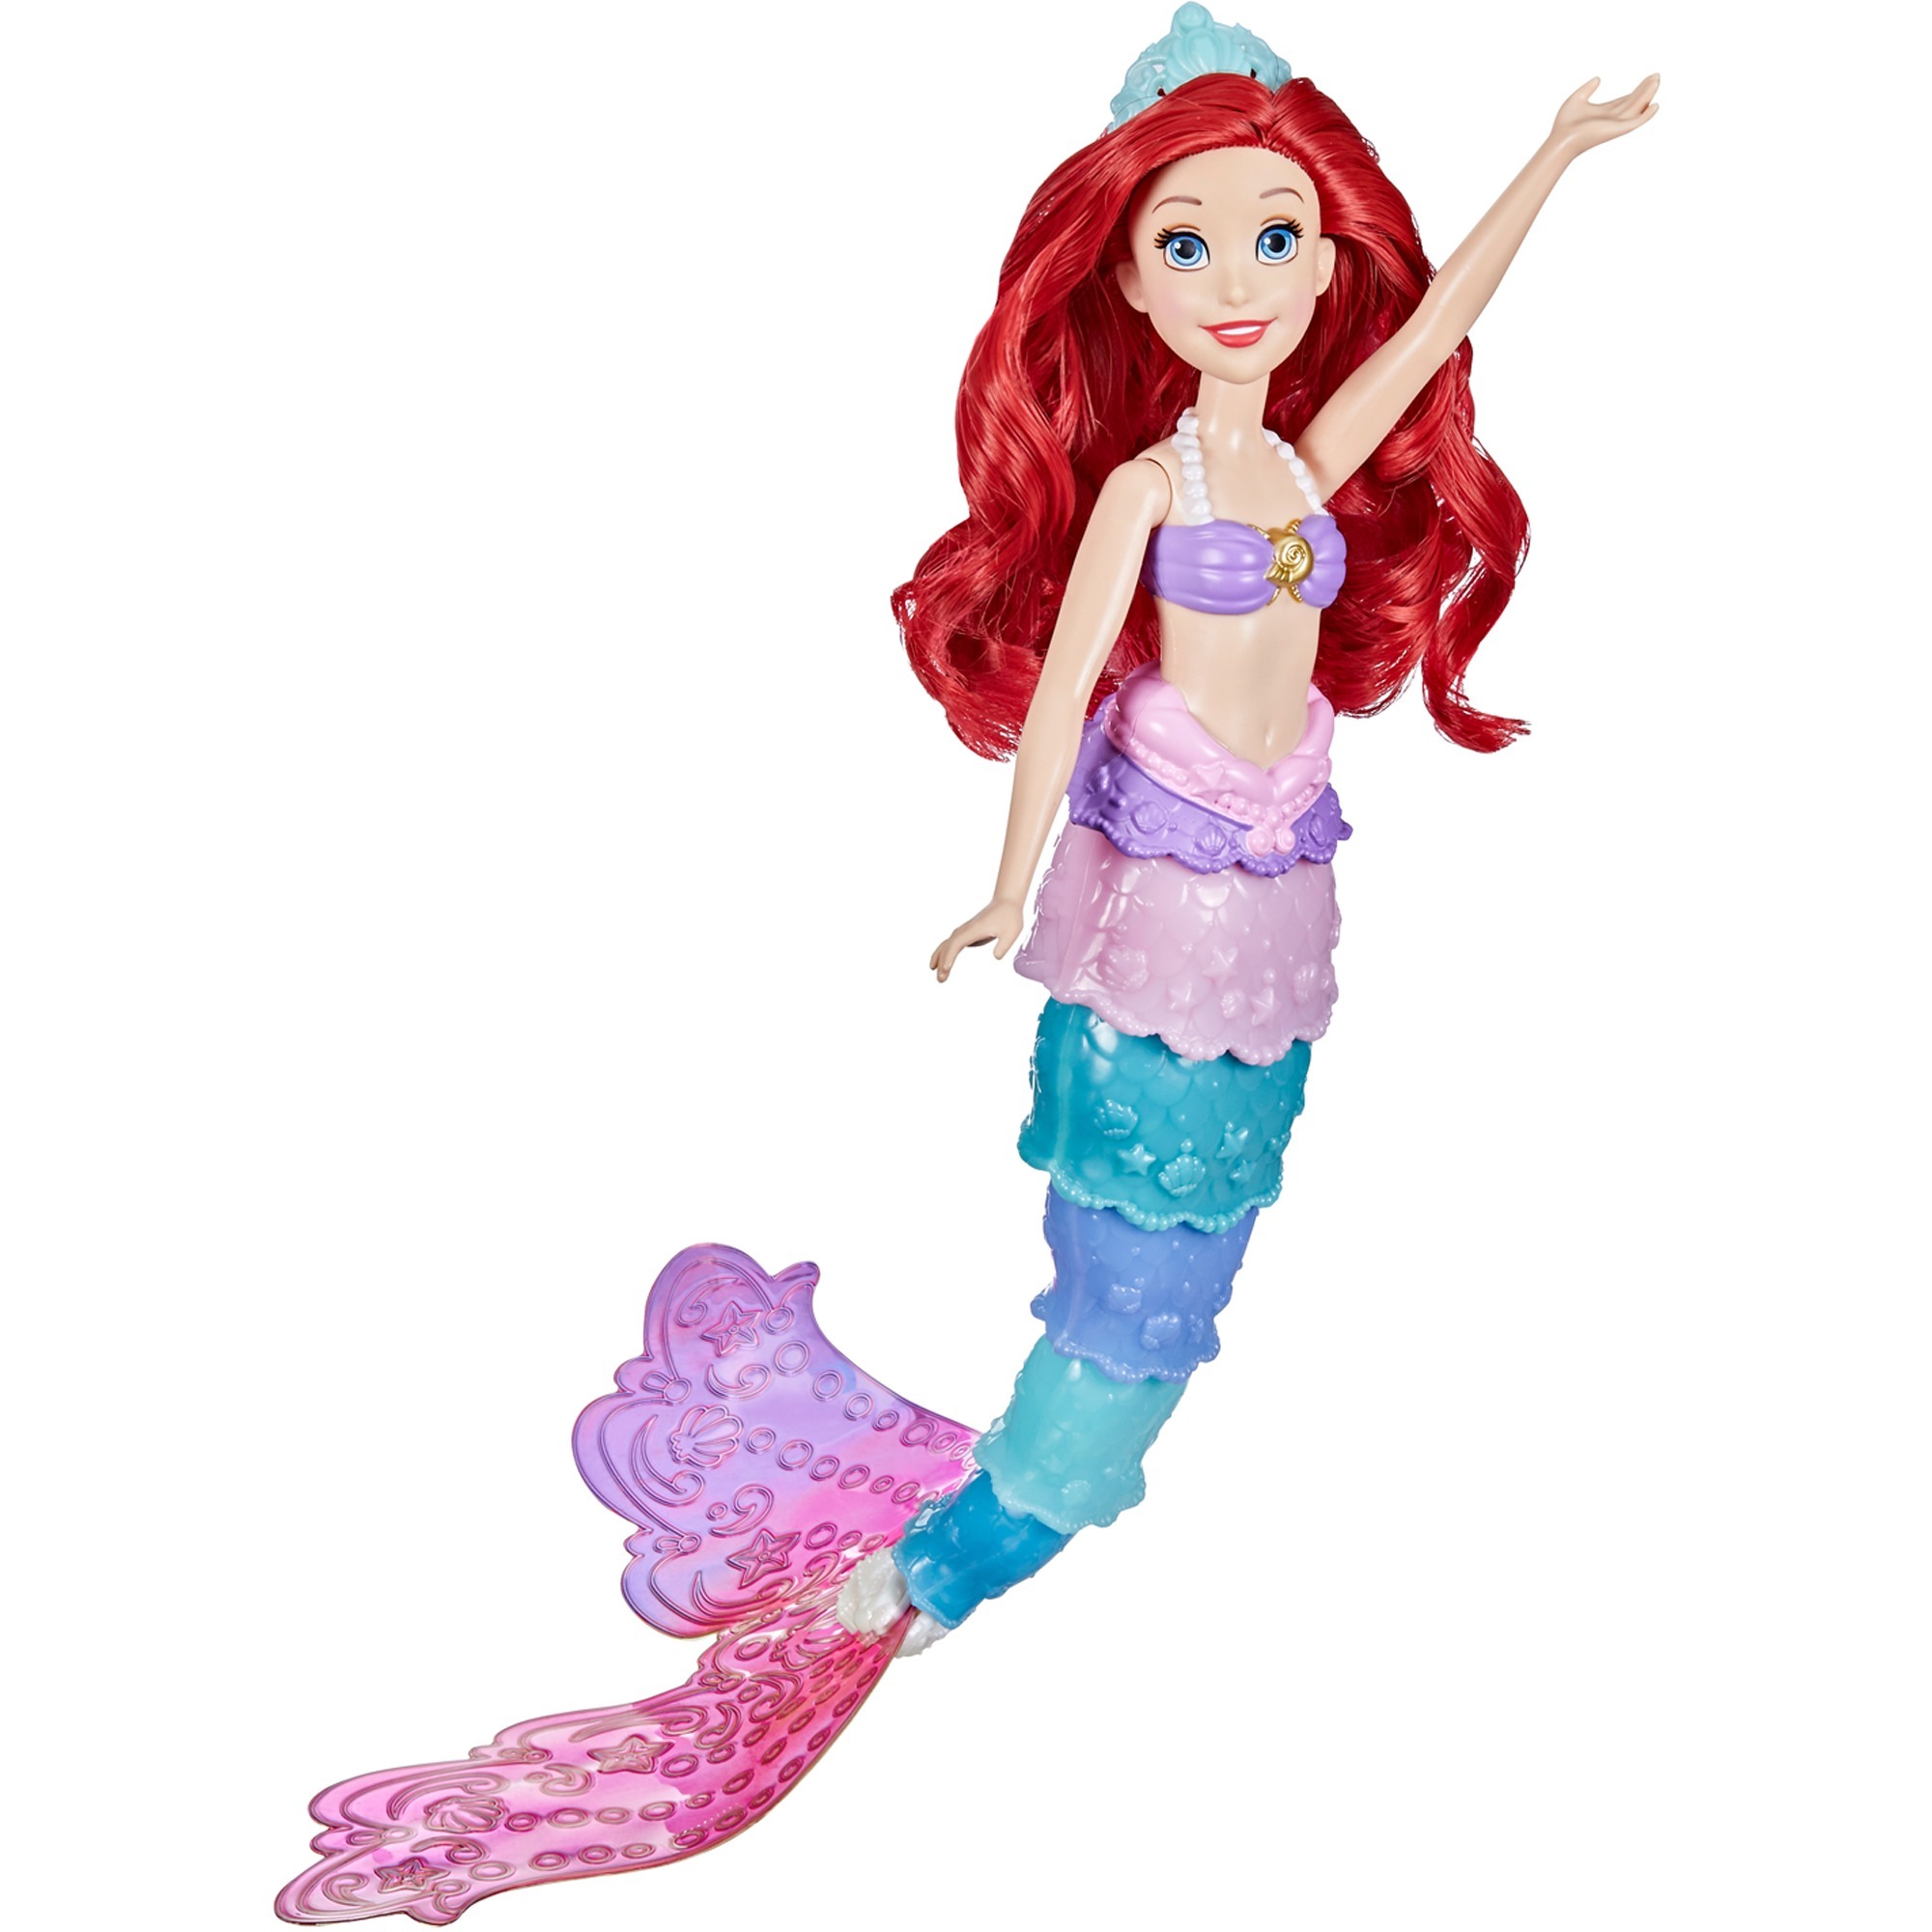 Image of Alternate - Disney Prinzessin Regenbogenzauber Arielle, Puppe online einkaufen bei Alternate